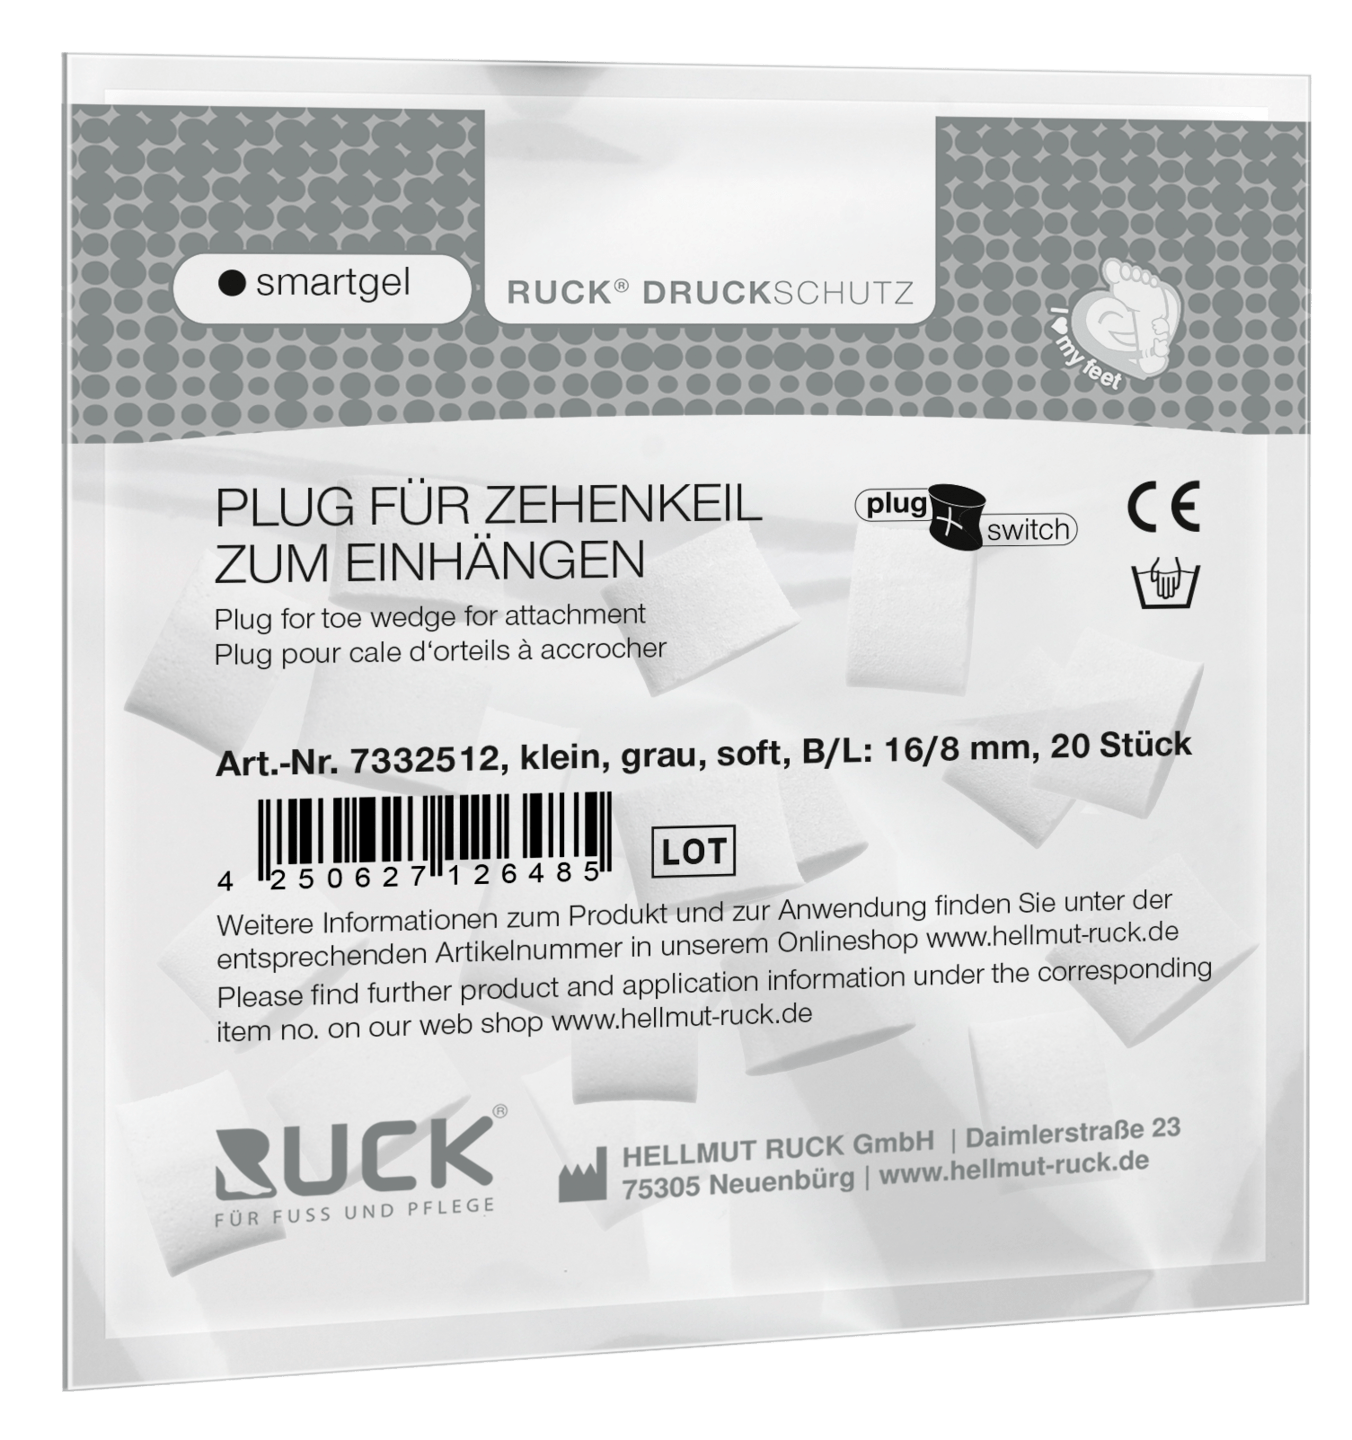 RUCK DRUCKSCHUTZ - Plugs für RUCK® DRUCKSCHUTZ smartgel plug+switch Zehenkeil zum Einhängen in grau